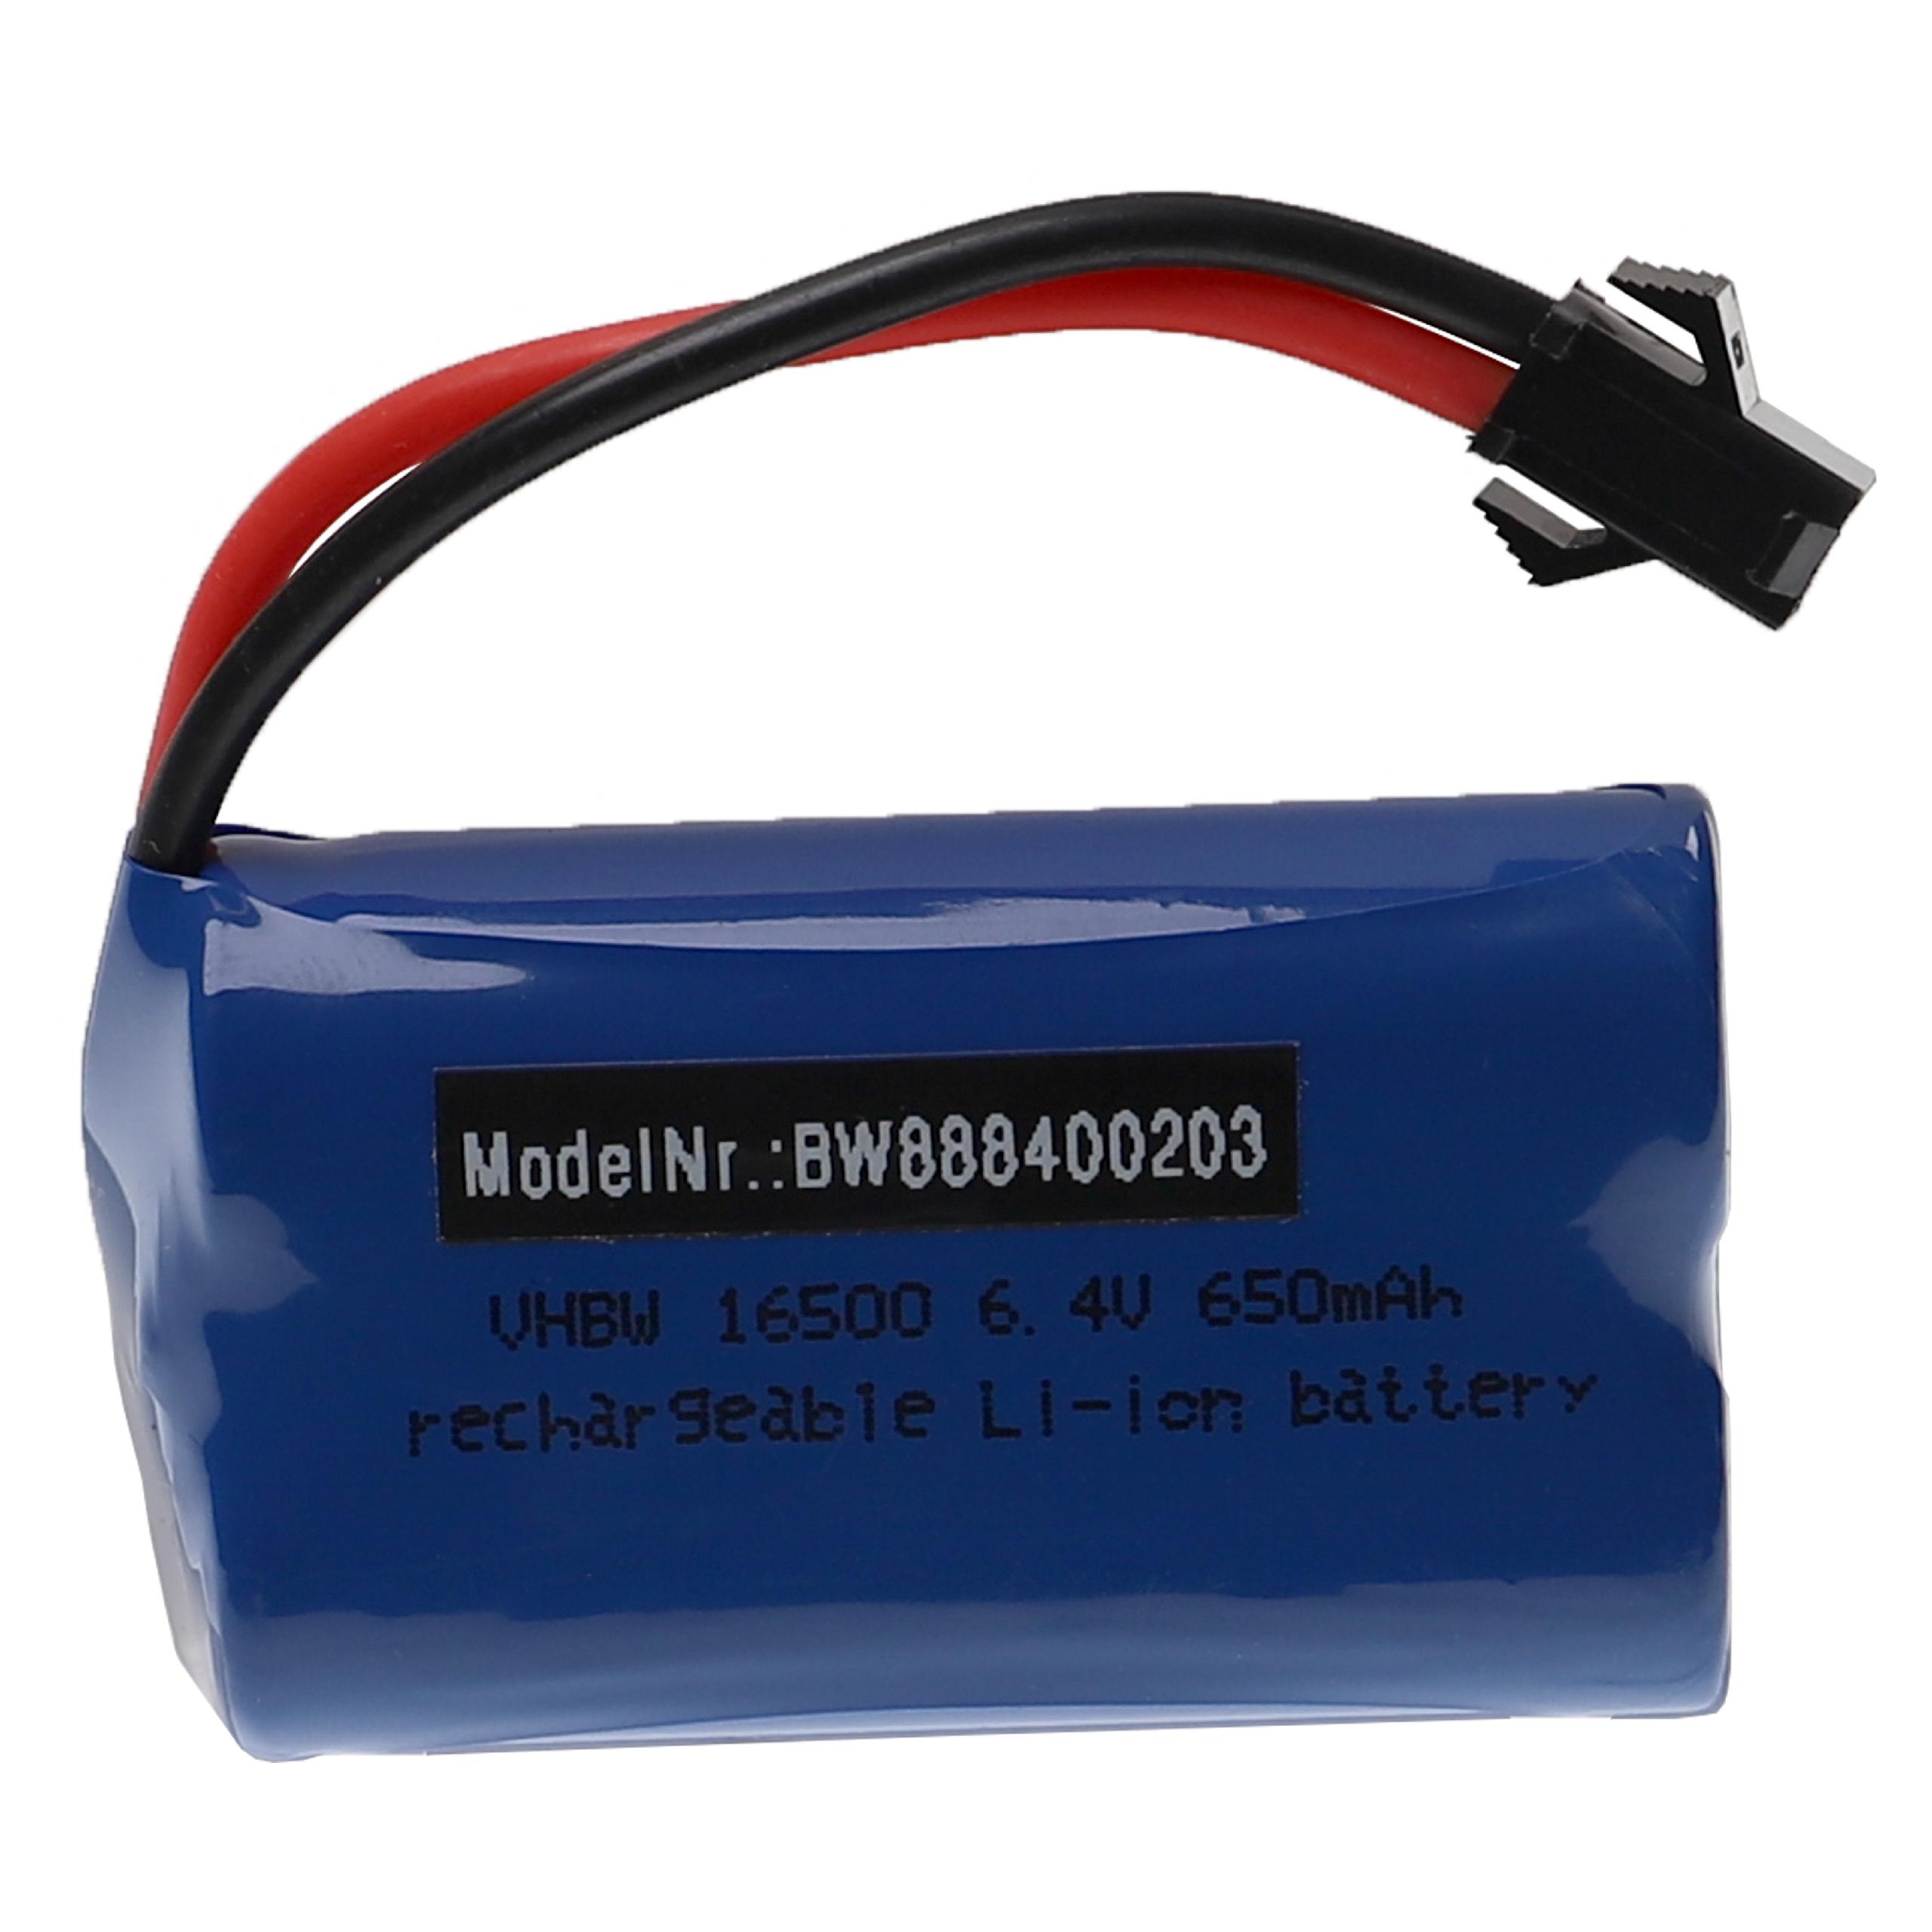 Batteria per modellini RC Wltoys A959-A, A969-A - 650mAh 6,4V Li-Ion, SM-2P